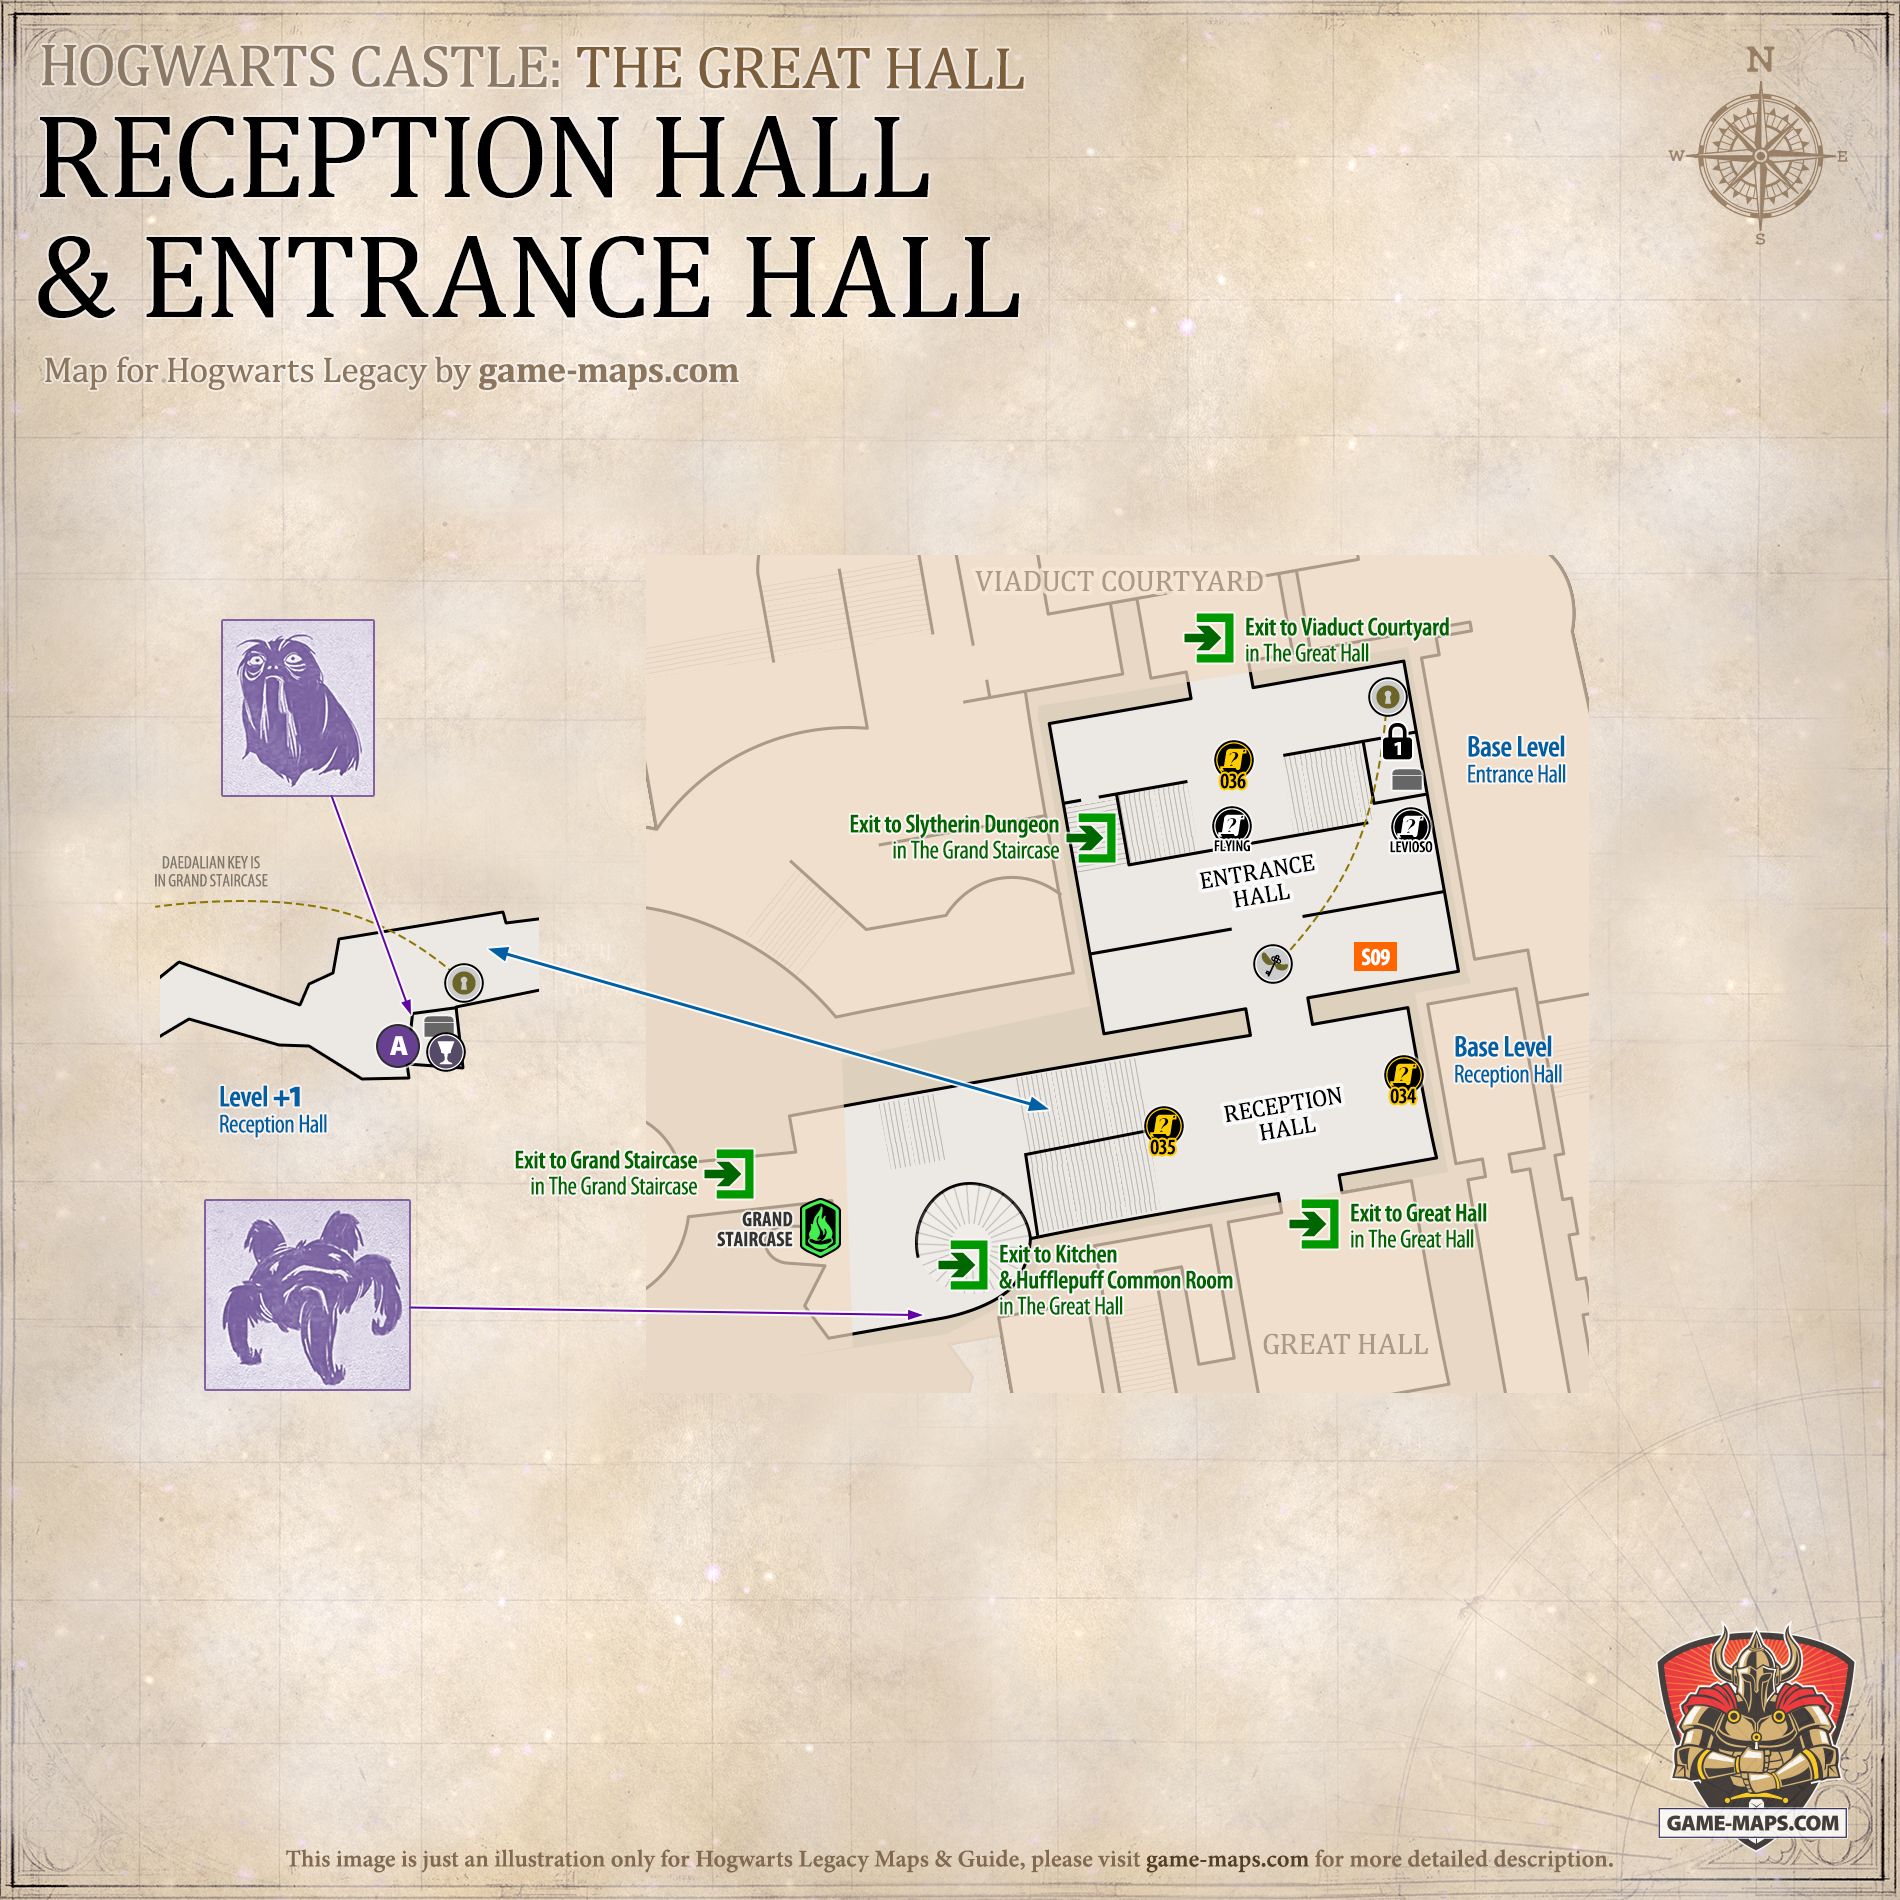 Entrance Hall & Reception Hall Hogwarts Legacy